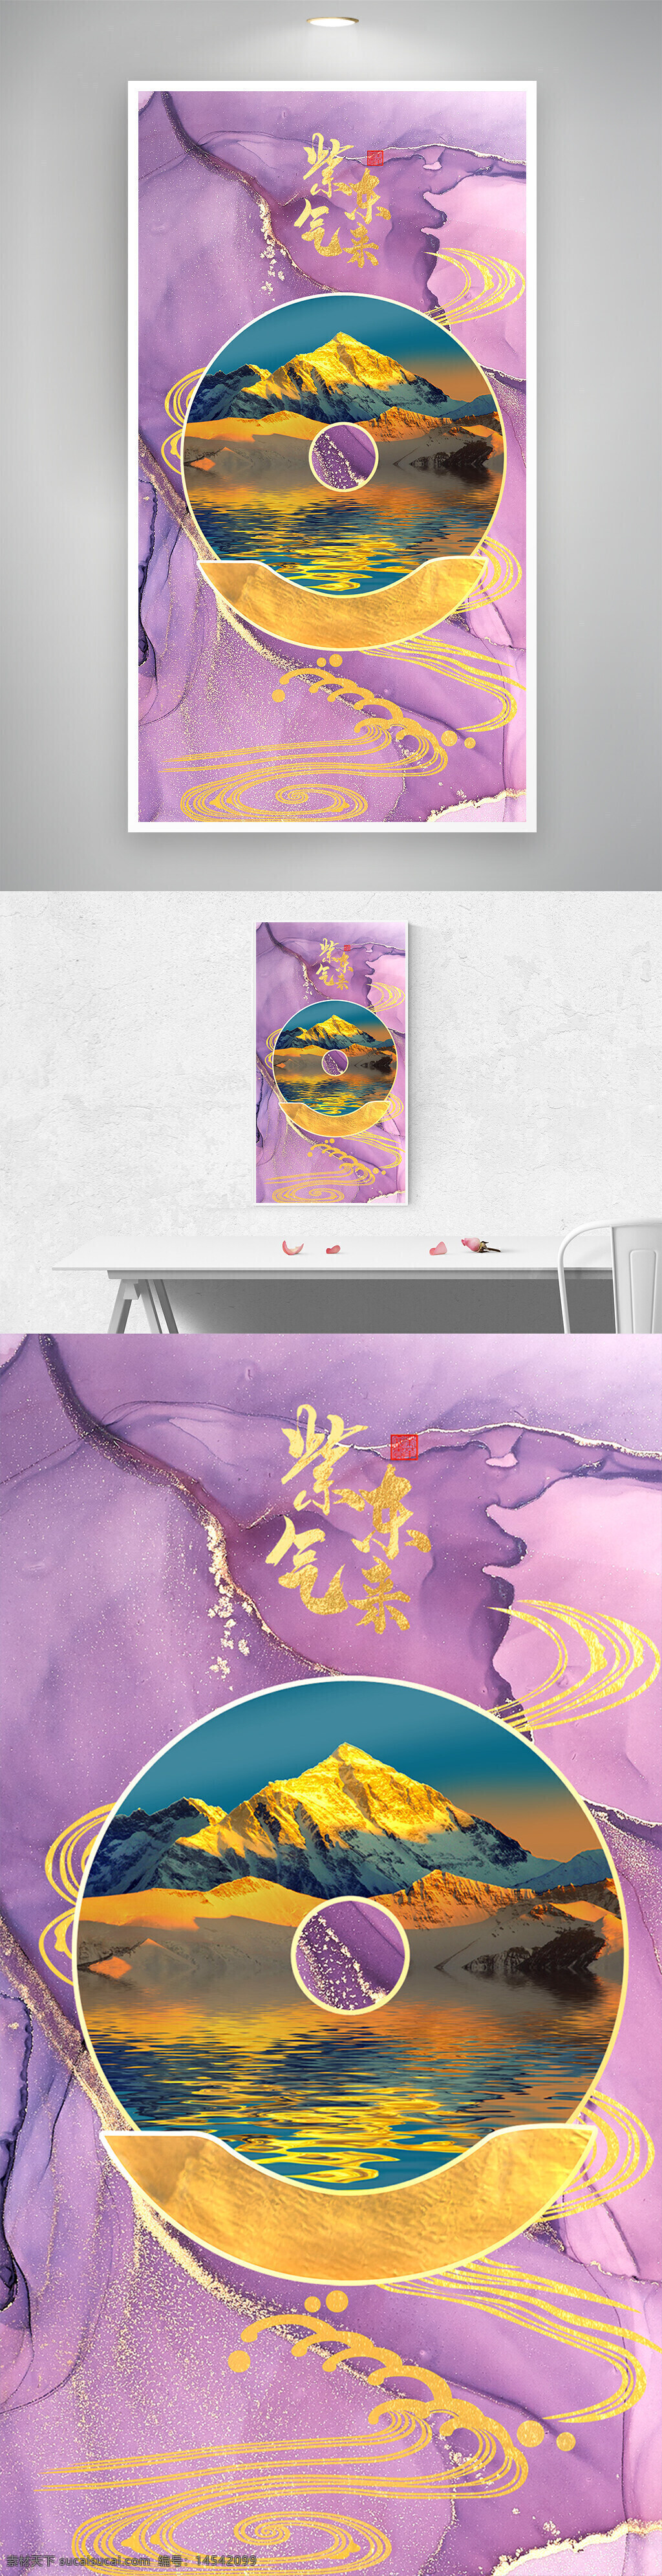 紫气东来 金山 山水 装饰画 大理石 祥云 移门 玄关 背景墙 晶瓷画 圆形